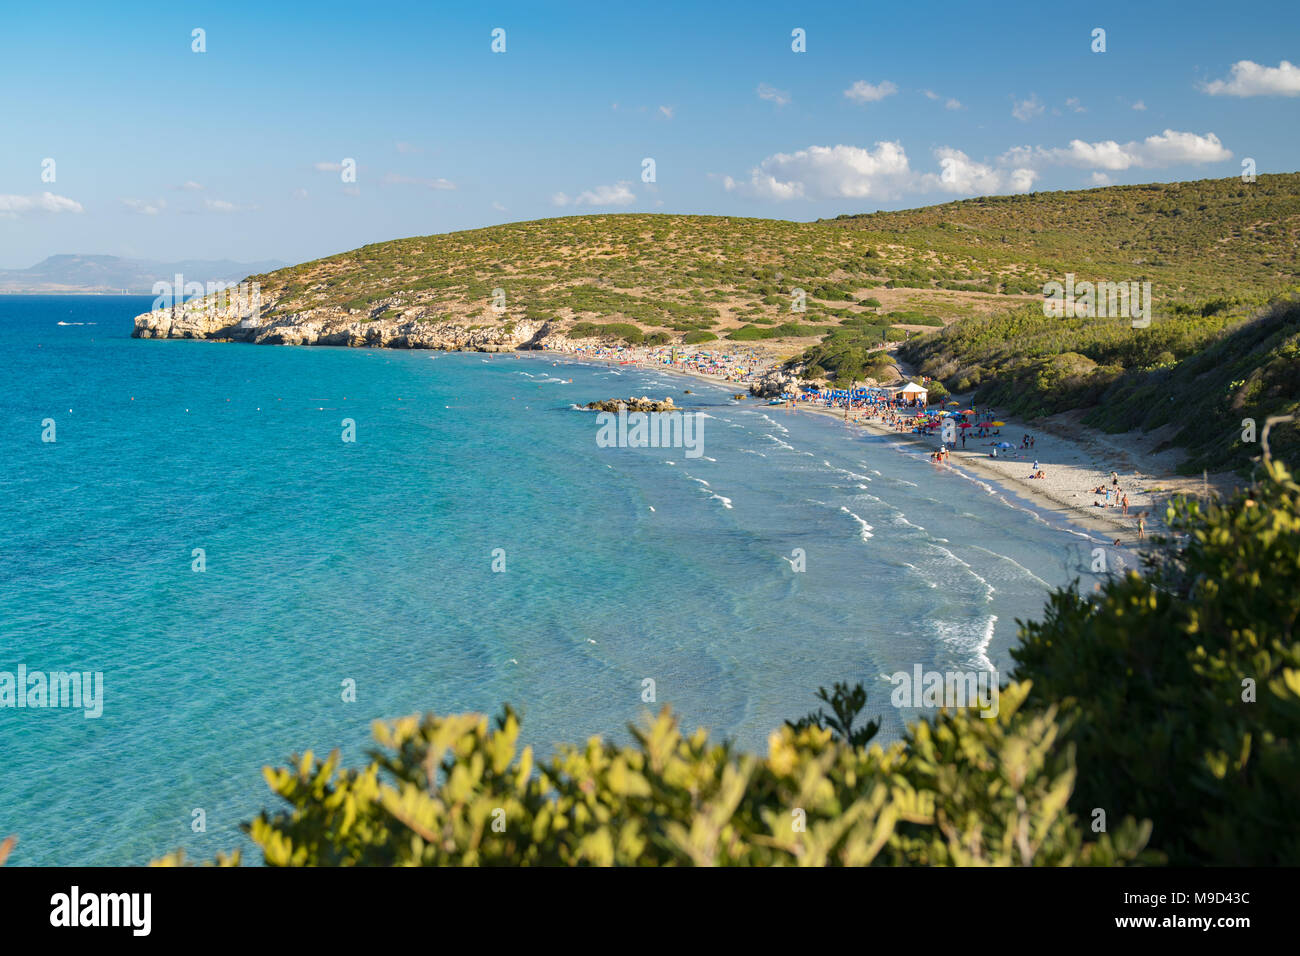 Una delle splendide spiagge incontaminate dell'Isola di San Pietro, Sardegna, Italia. Foto Stock